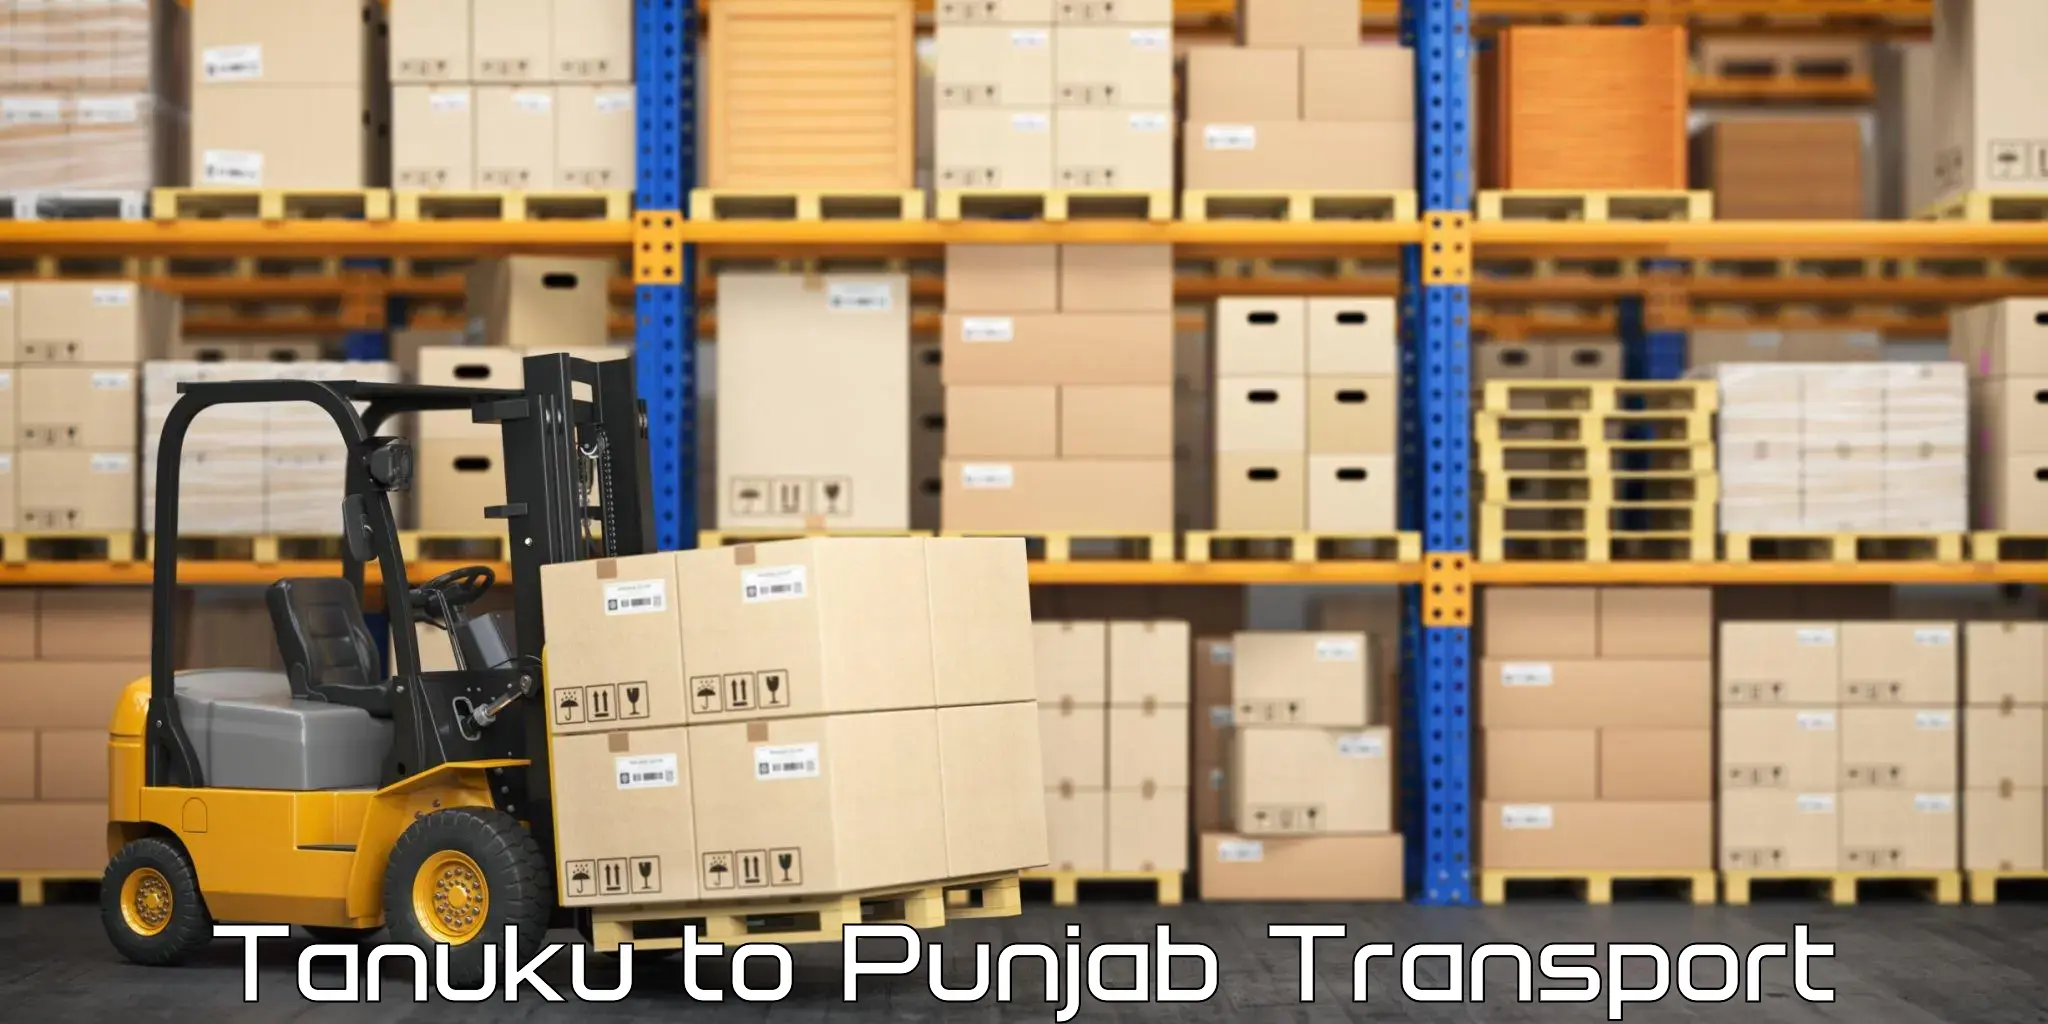 Intercity transport in Tanuku to Punjab